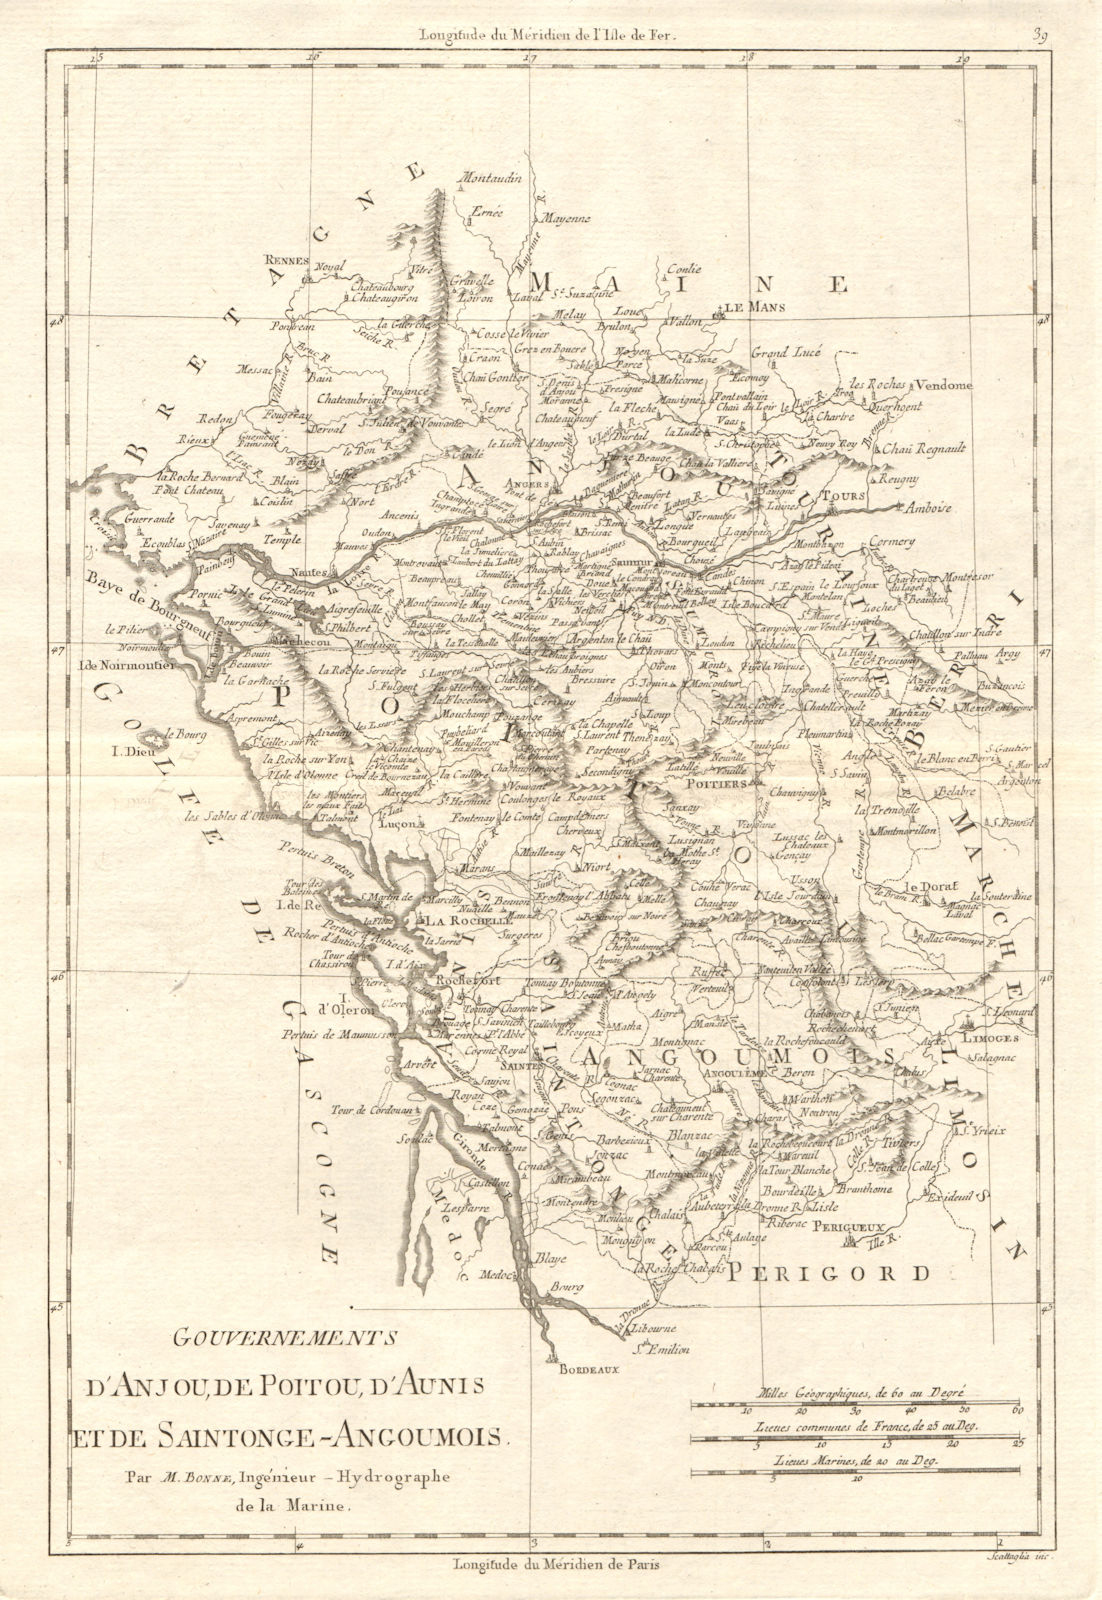 Gouvernements d’Anjou, de Poitou, d’Aunis & Saintonge-Angoumois. BONNE 1789 map